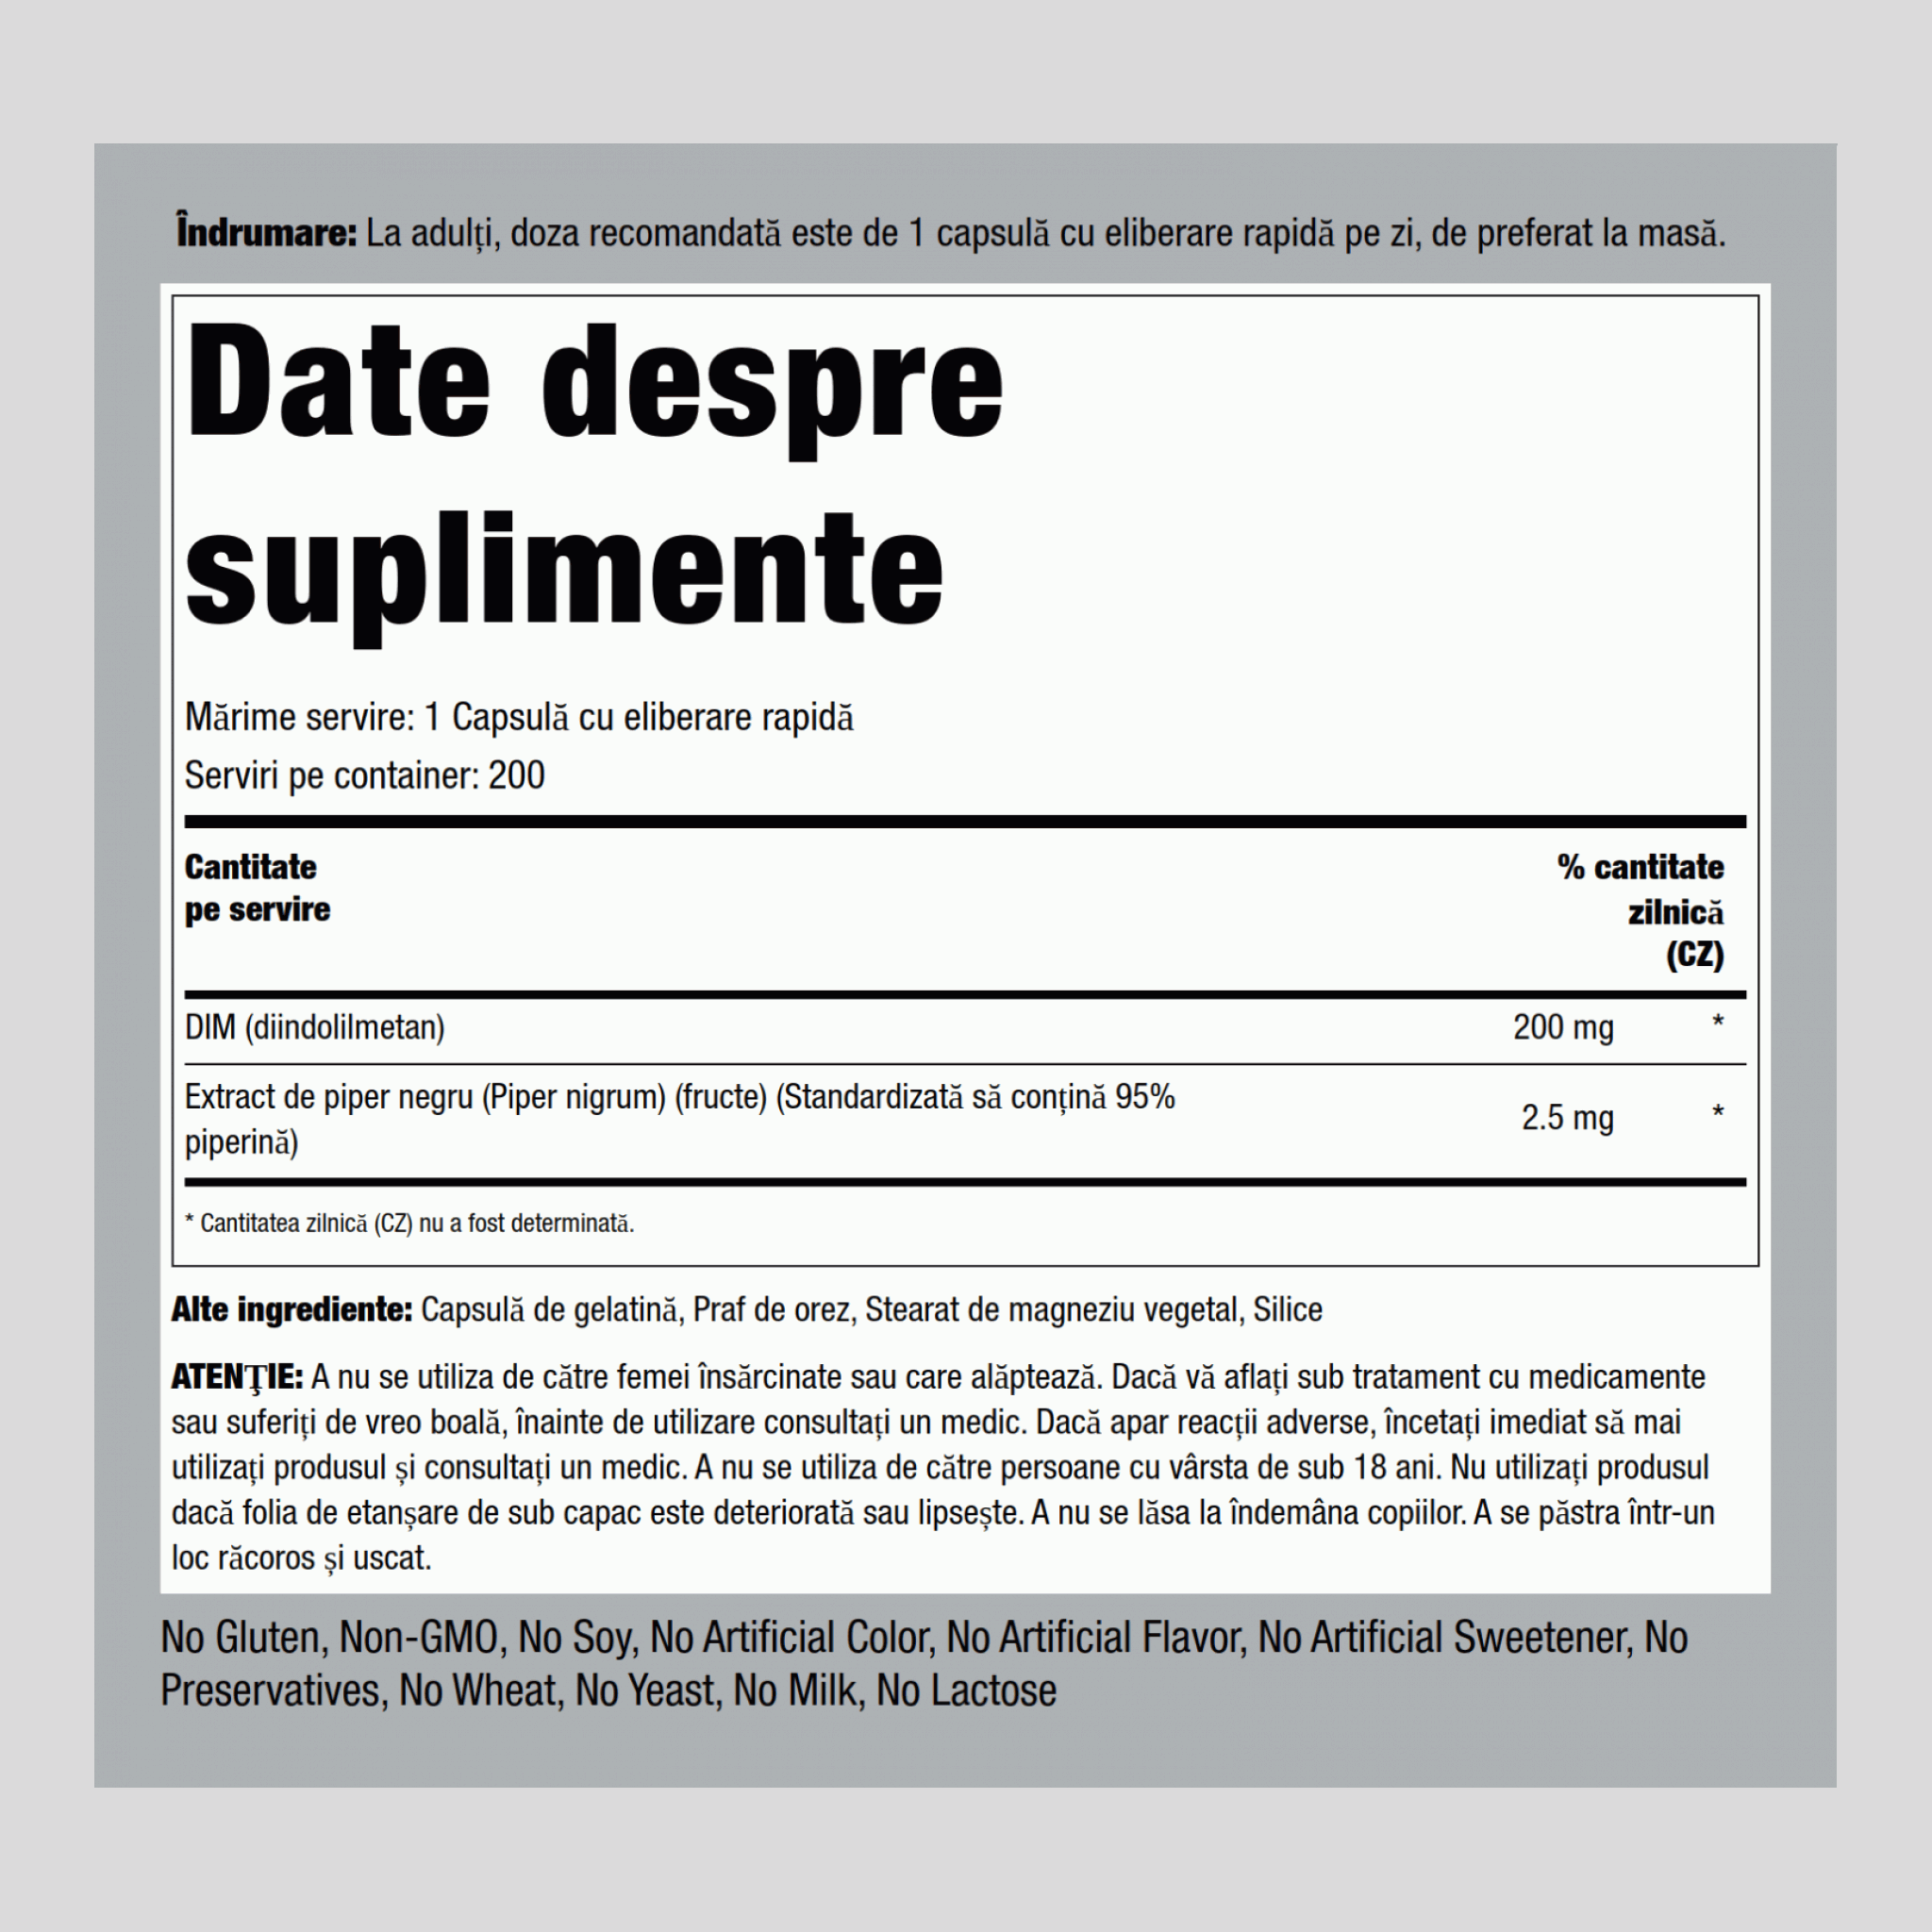 DIM (diindolylmethane) 200 mg 200 Capsule cu eliberare rapidă     